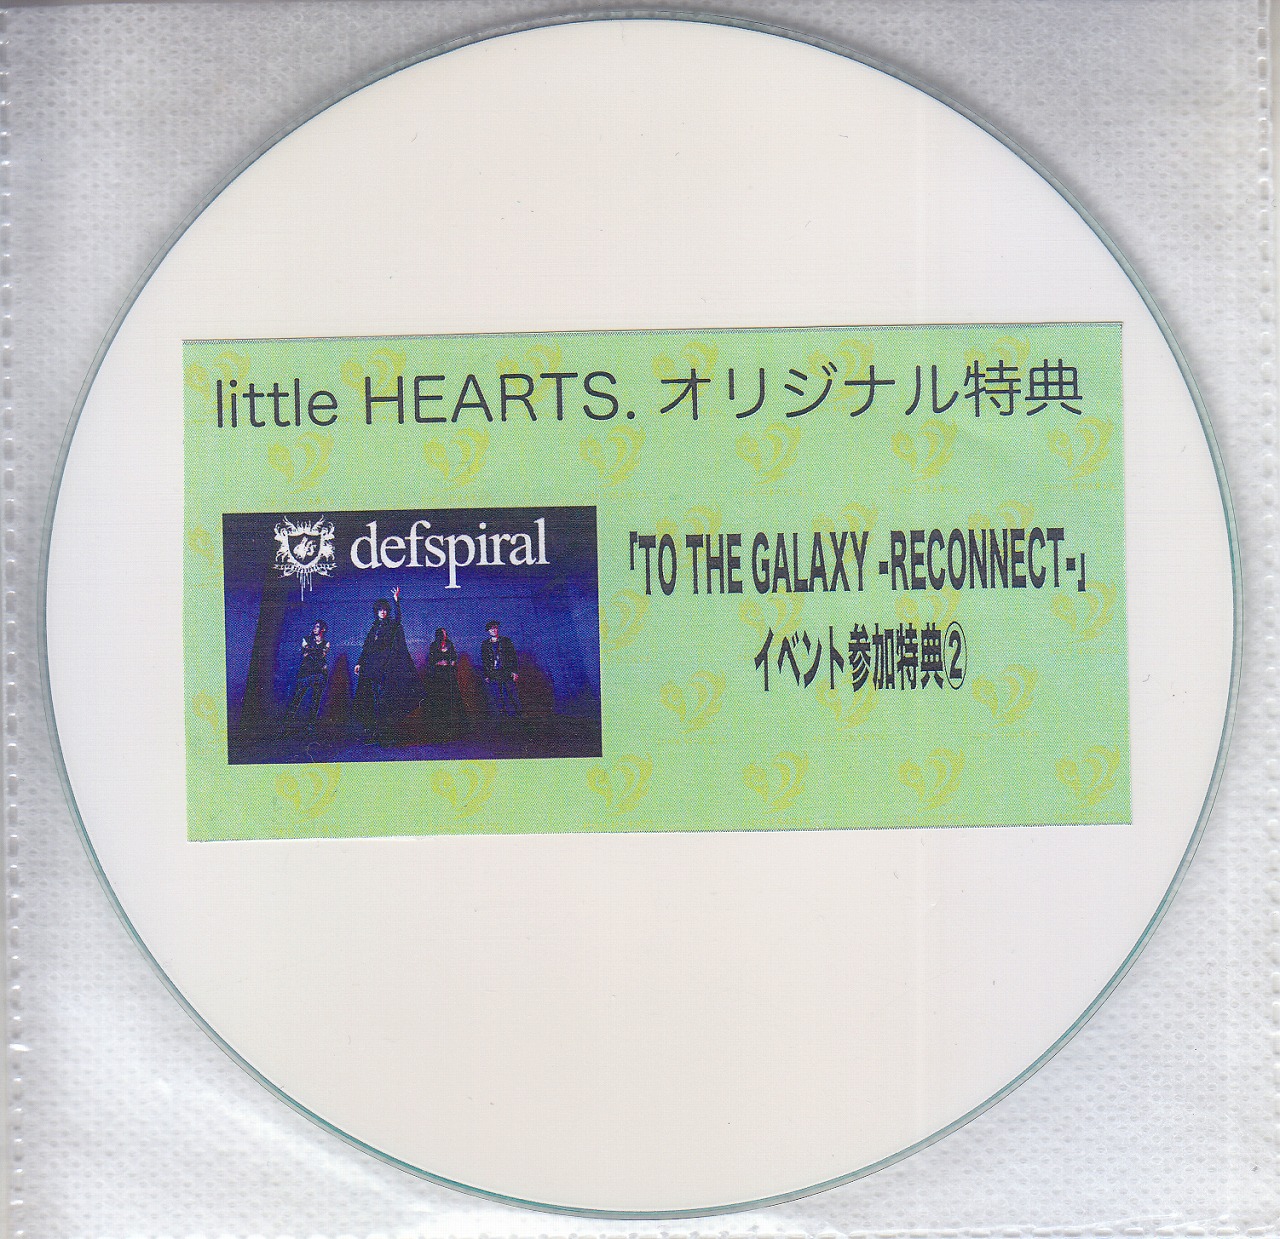 デフスパイラル の DVD 【little HEARTS.】TO THE GALAXY-RECONNECT- イベント参加特典②